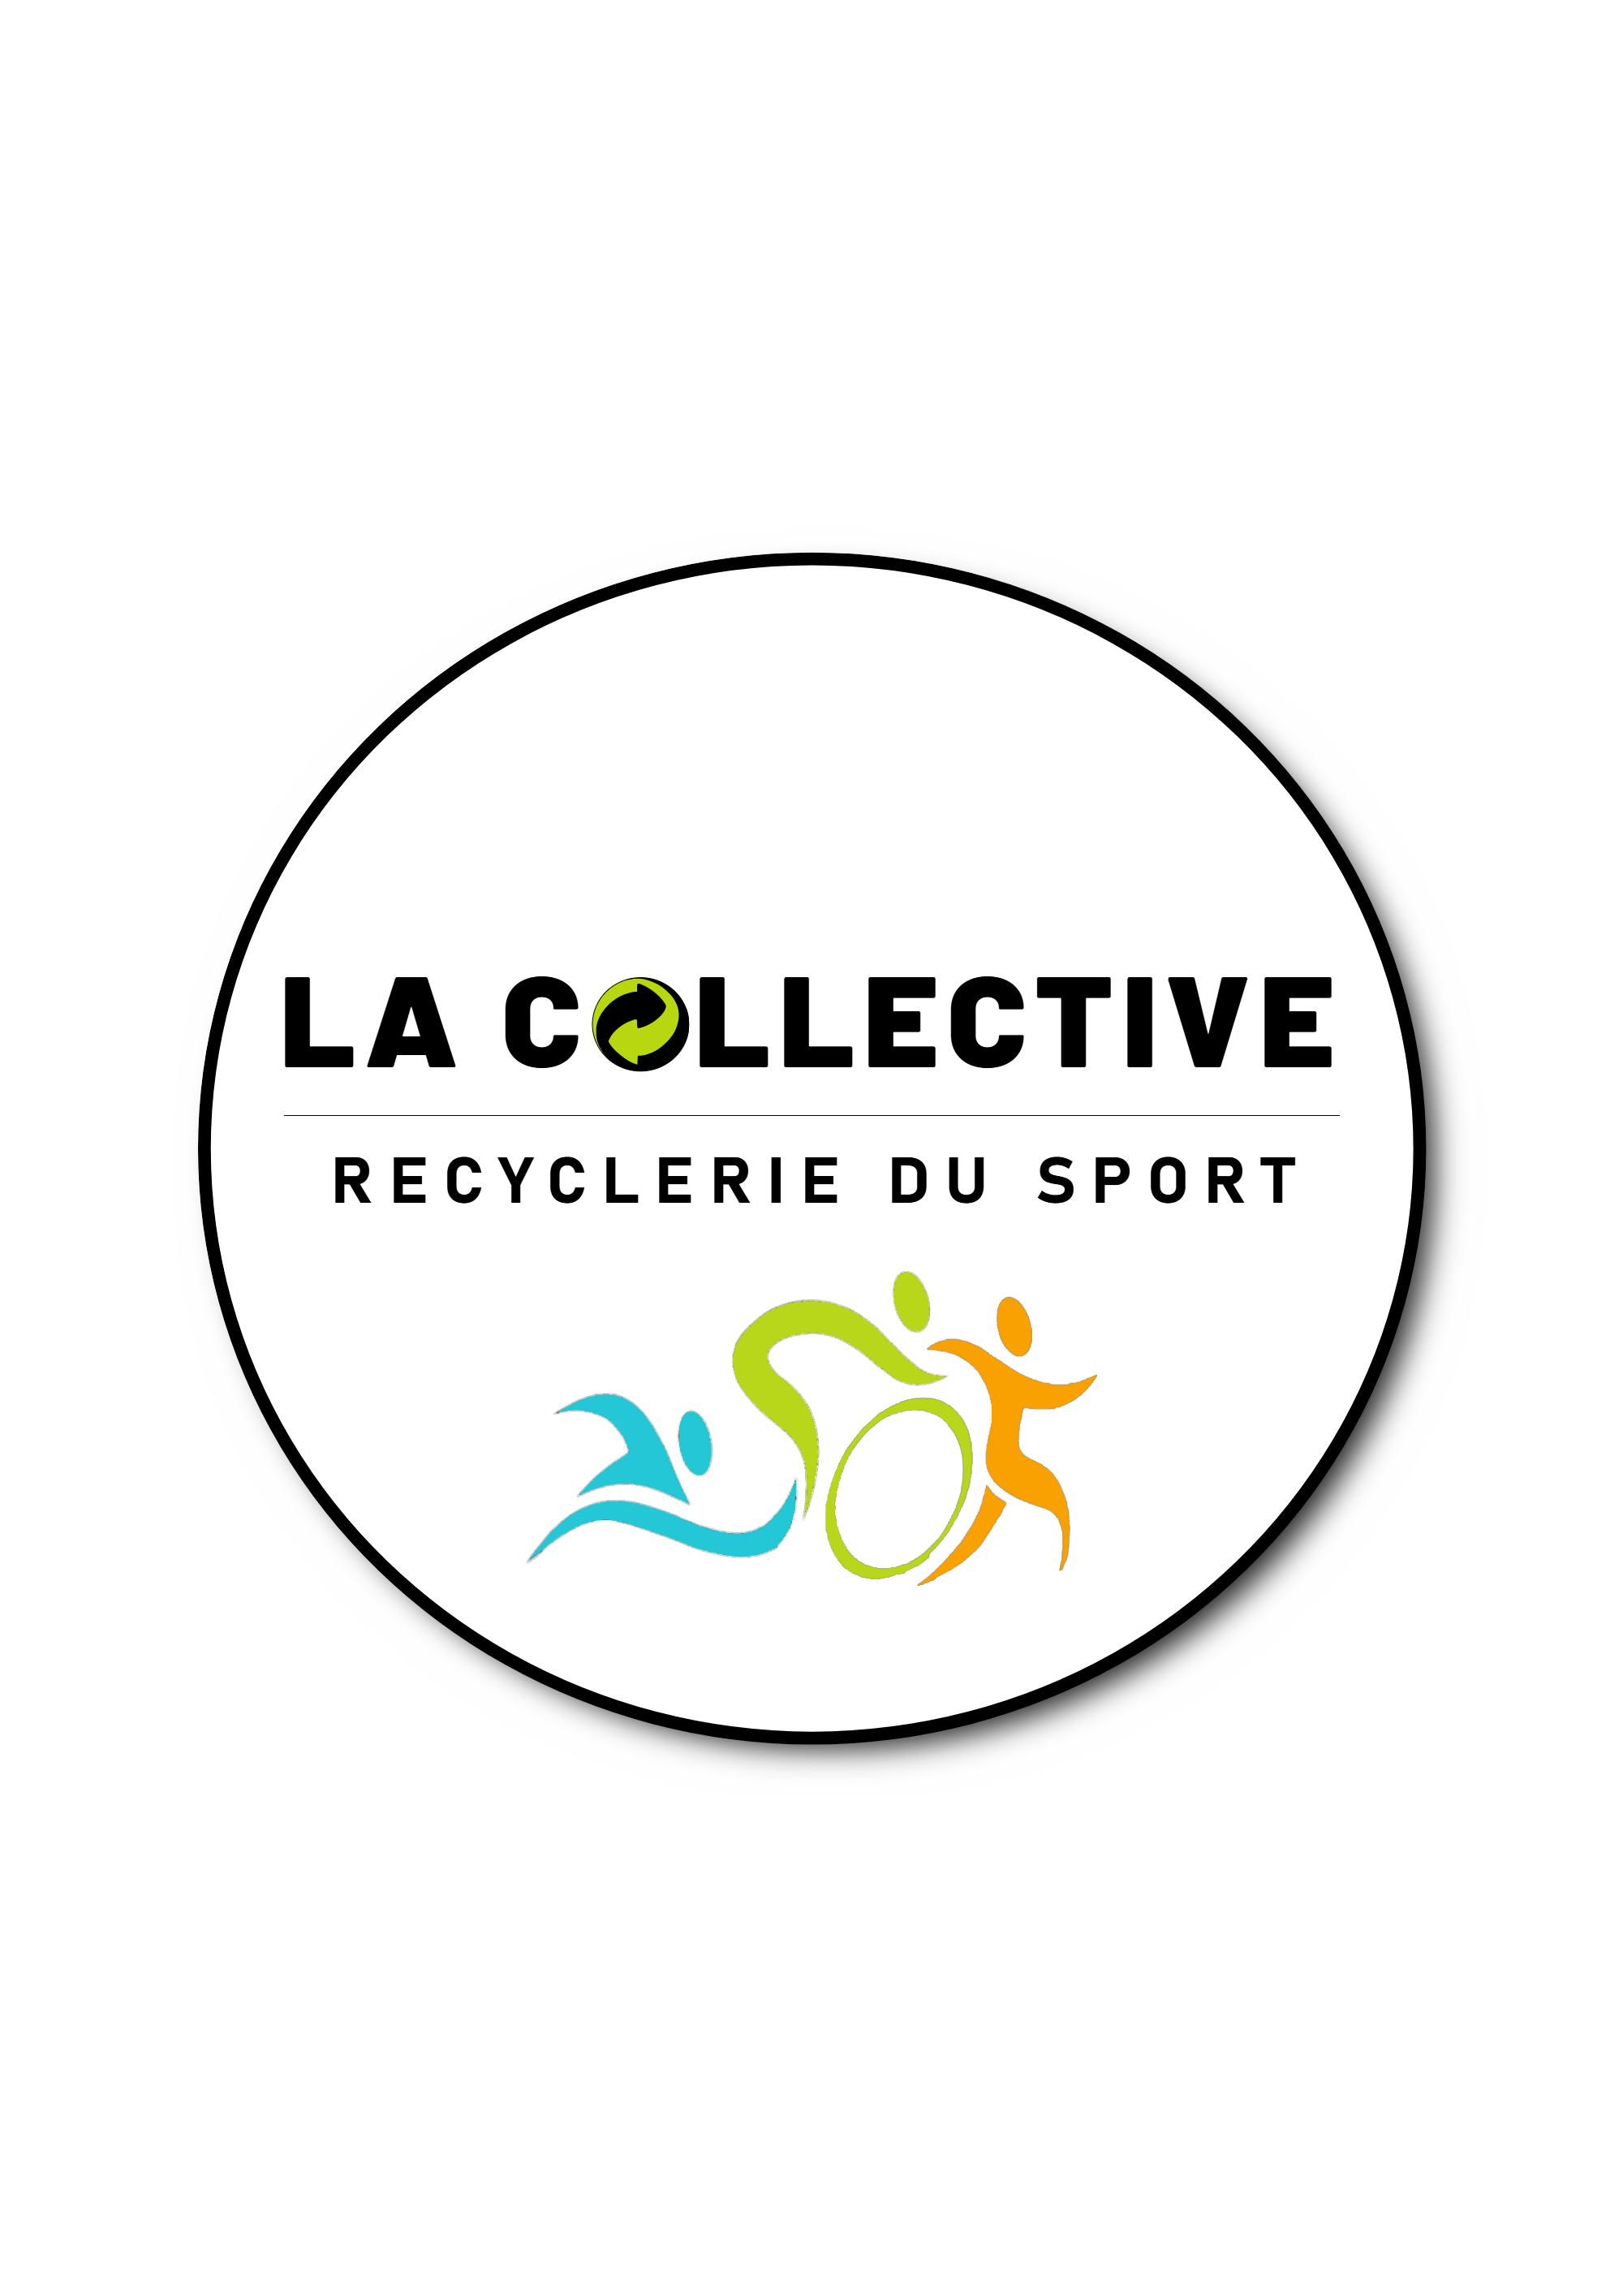 La collective recyclerie du sport